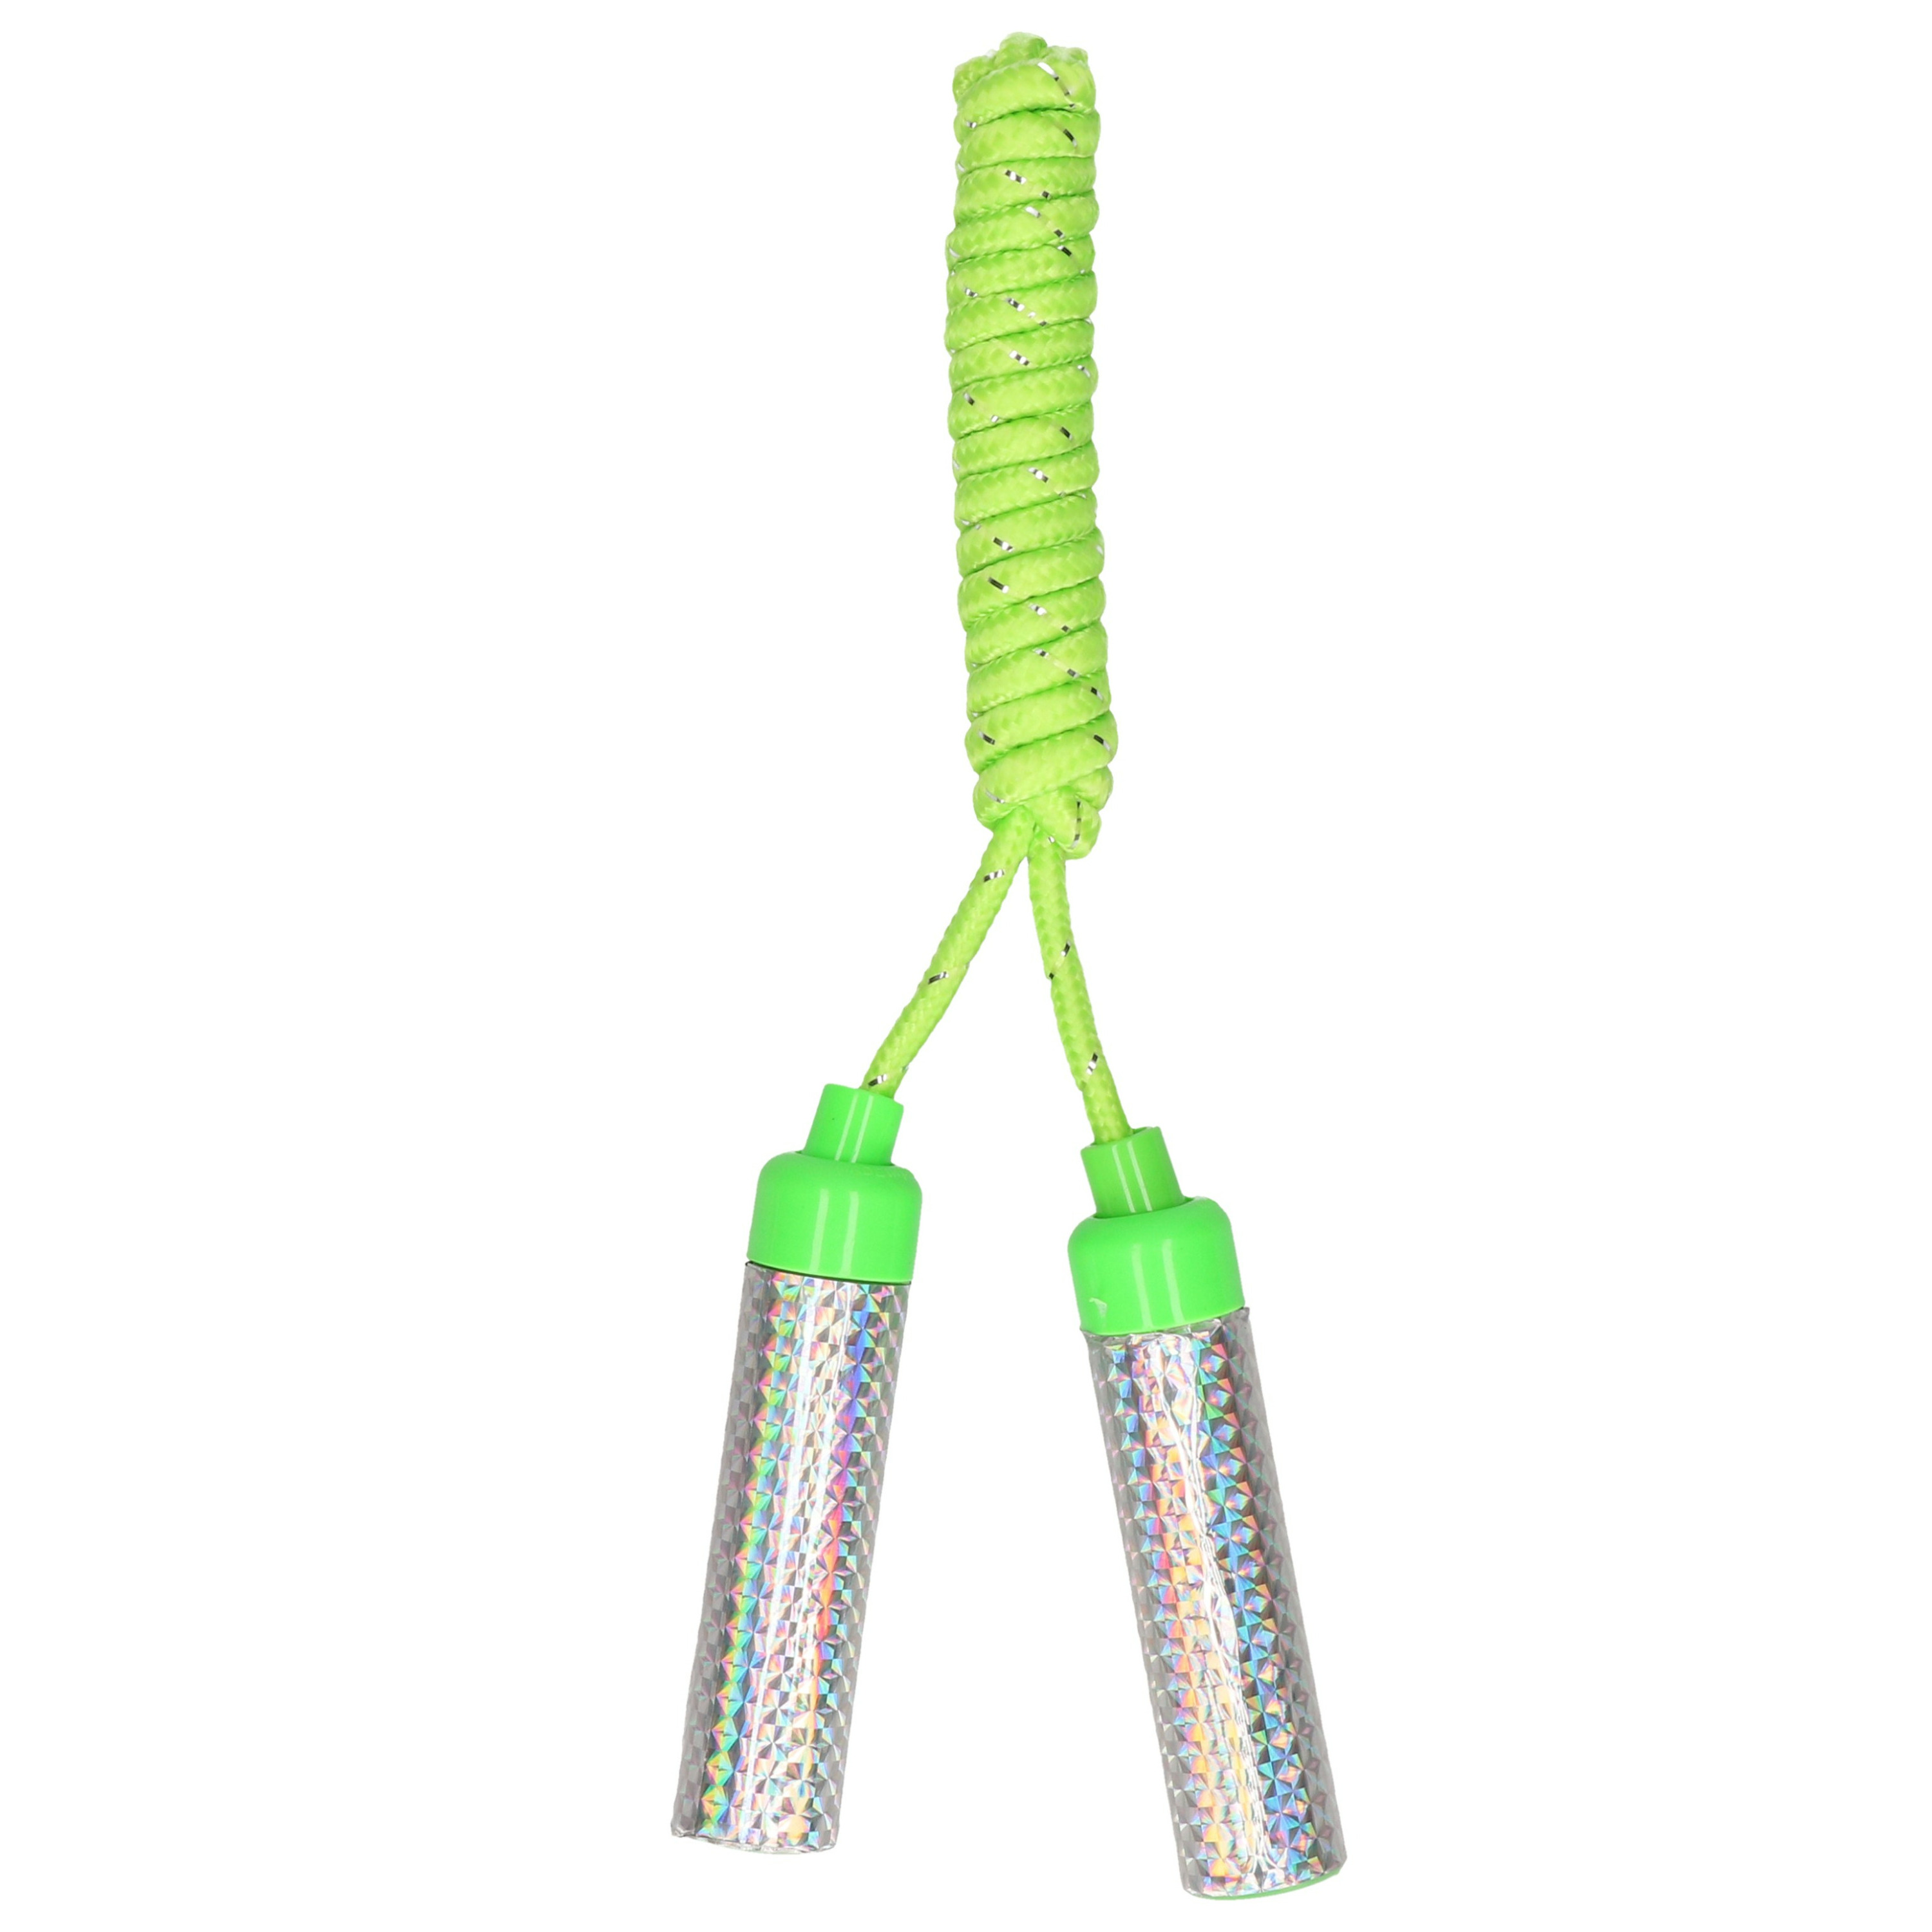 Springtouw speelgoed met glitters - groen - 210 cm - buitenspeelgoed